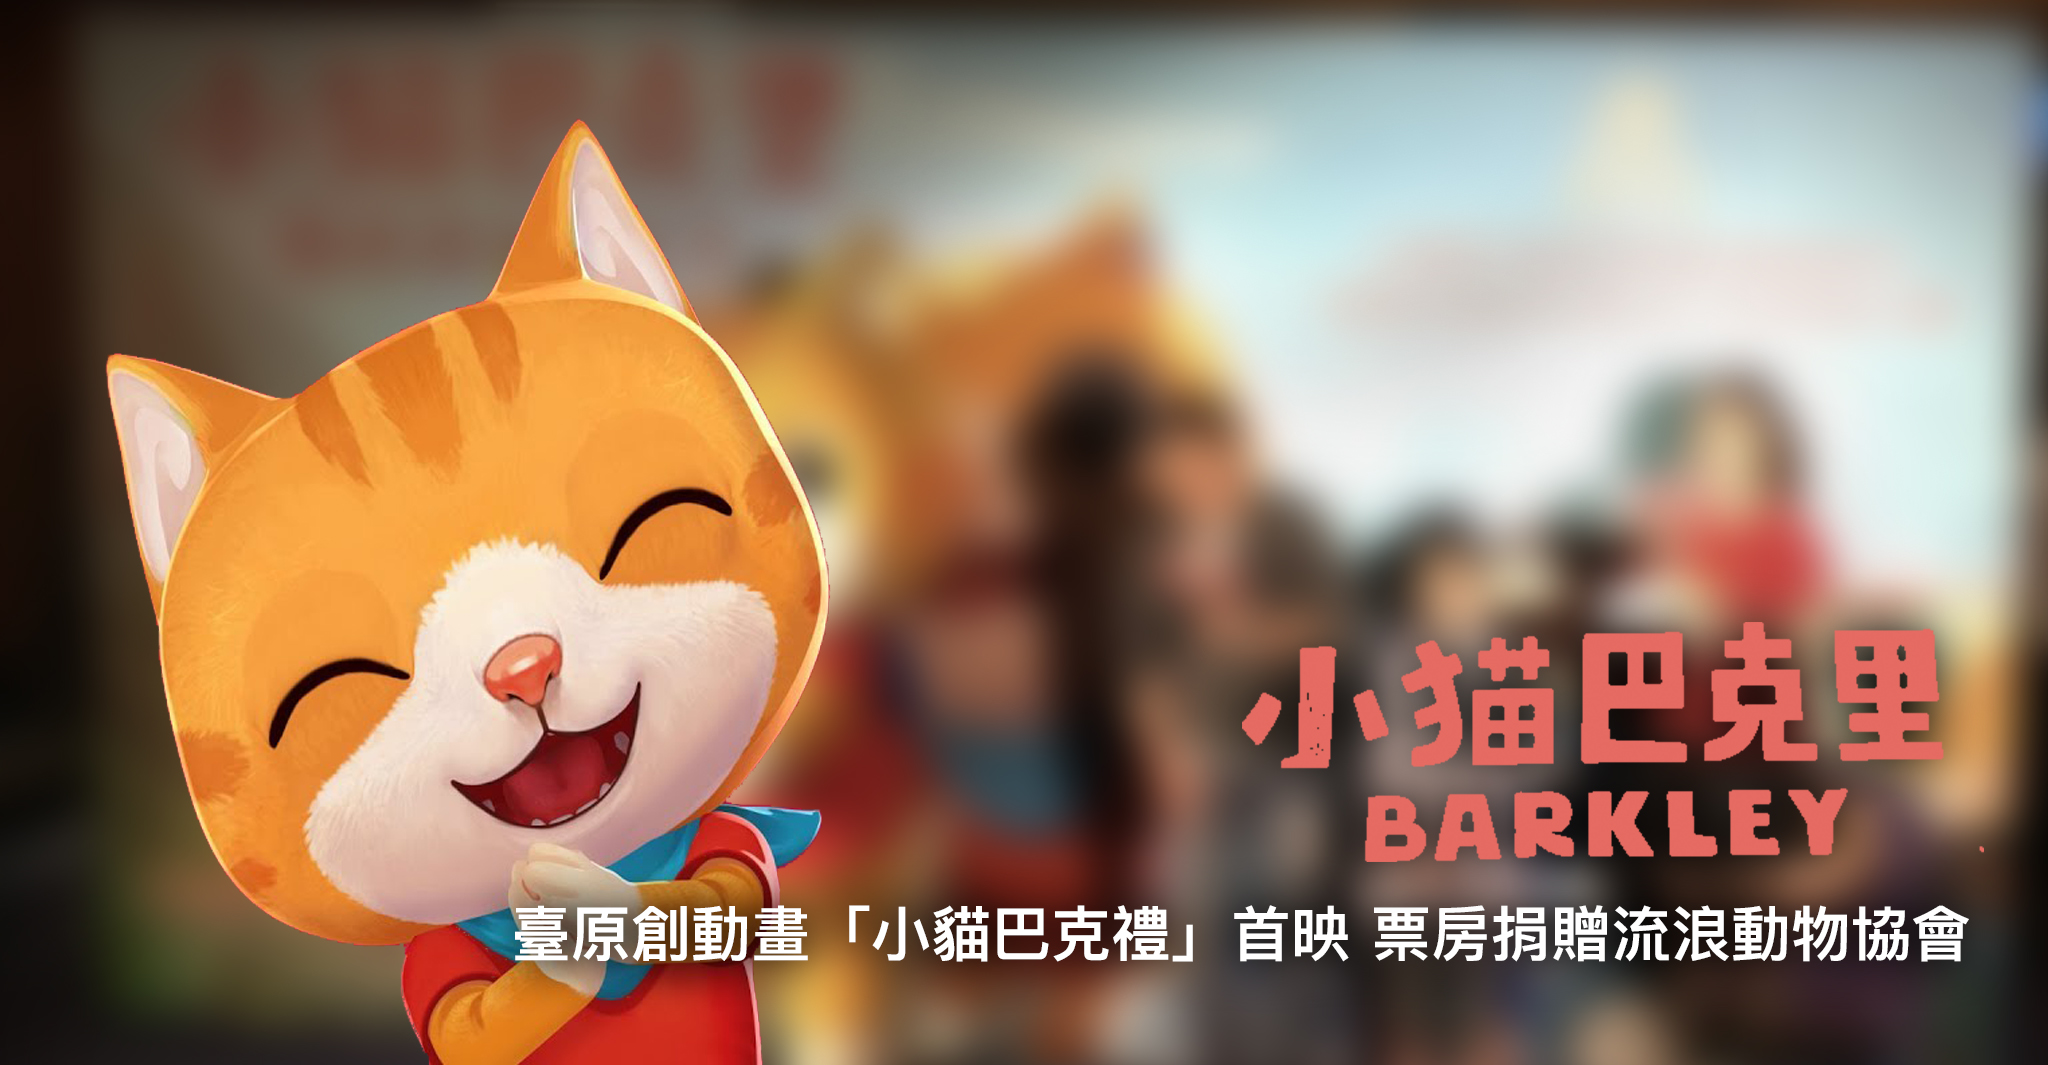 由台灣 studio2 Animation Lab 所推出的原創動畫《小貓巴克里》，繼推出電視動畫後，將推出動畫電影作品，預計今年 12 月 29 日在台上映。